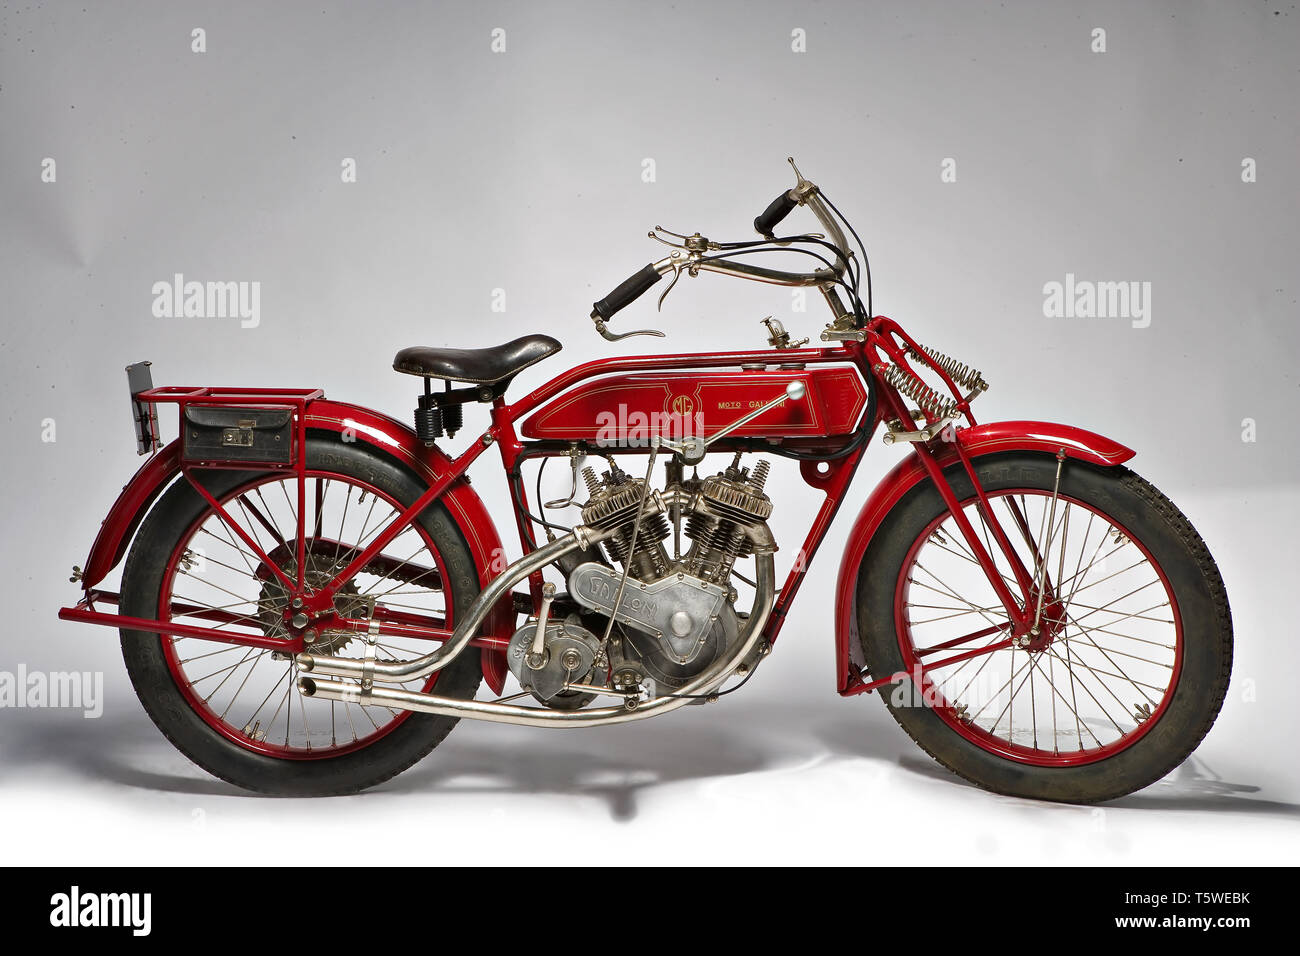 Moto d'epoca Galloni 750 SS  fabbrica: MG - Moto Galloni modello: 750 SS  fabbricata in: Italia - Borgomanero anno di costruzione: 1920-21 Stock Photo